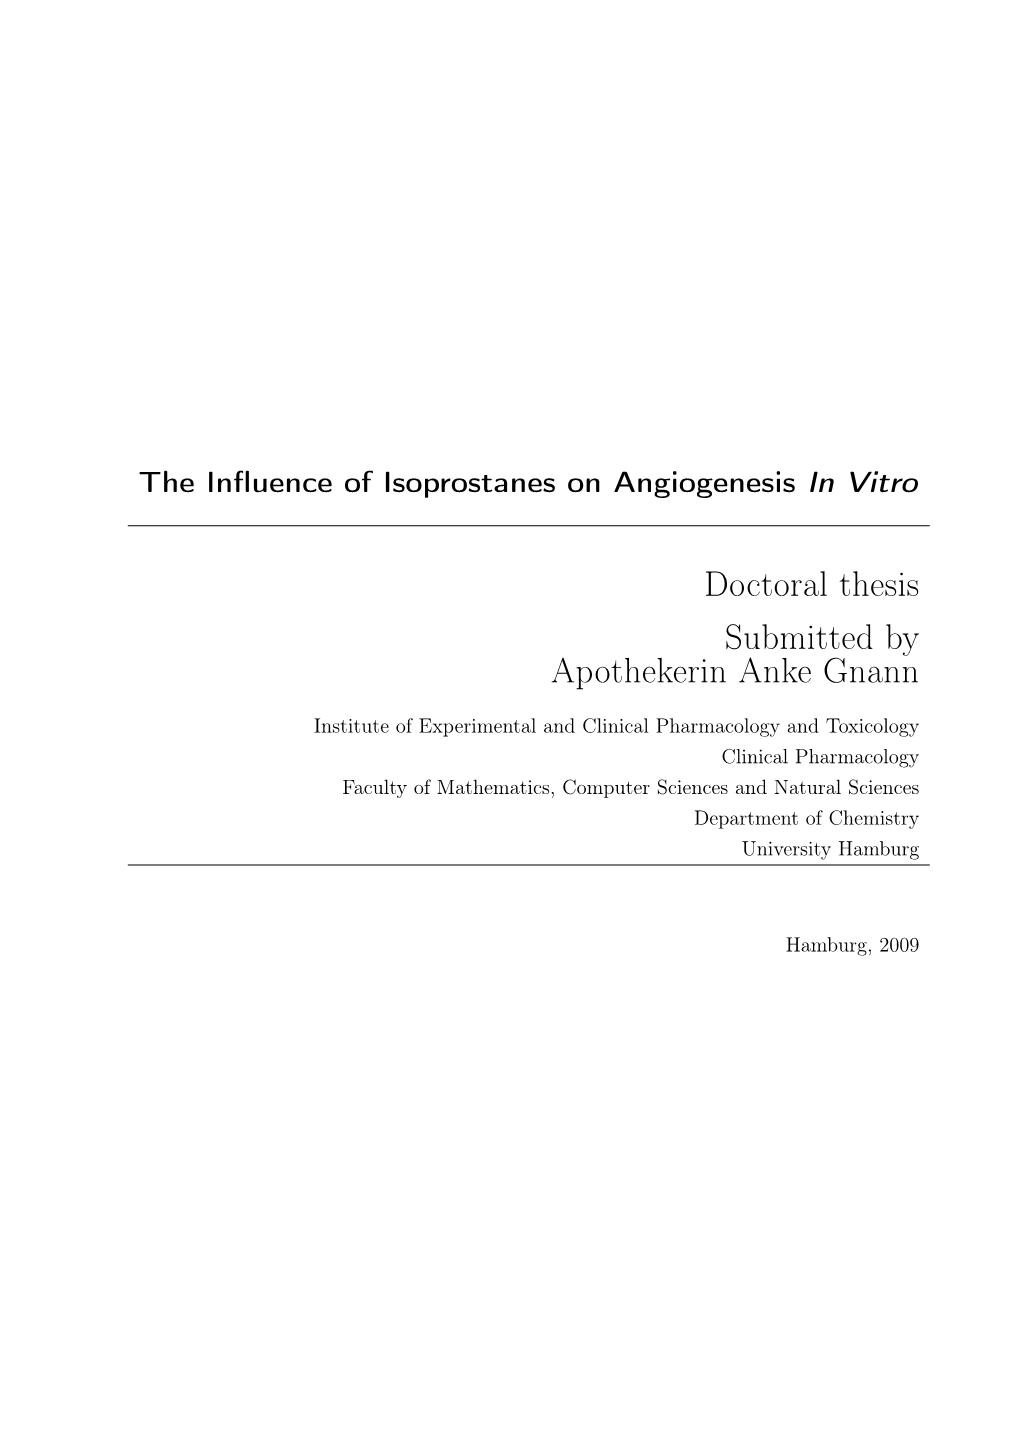 Isoprostanes on Angiogenesis in Vitro